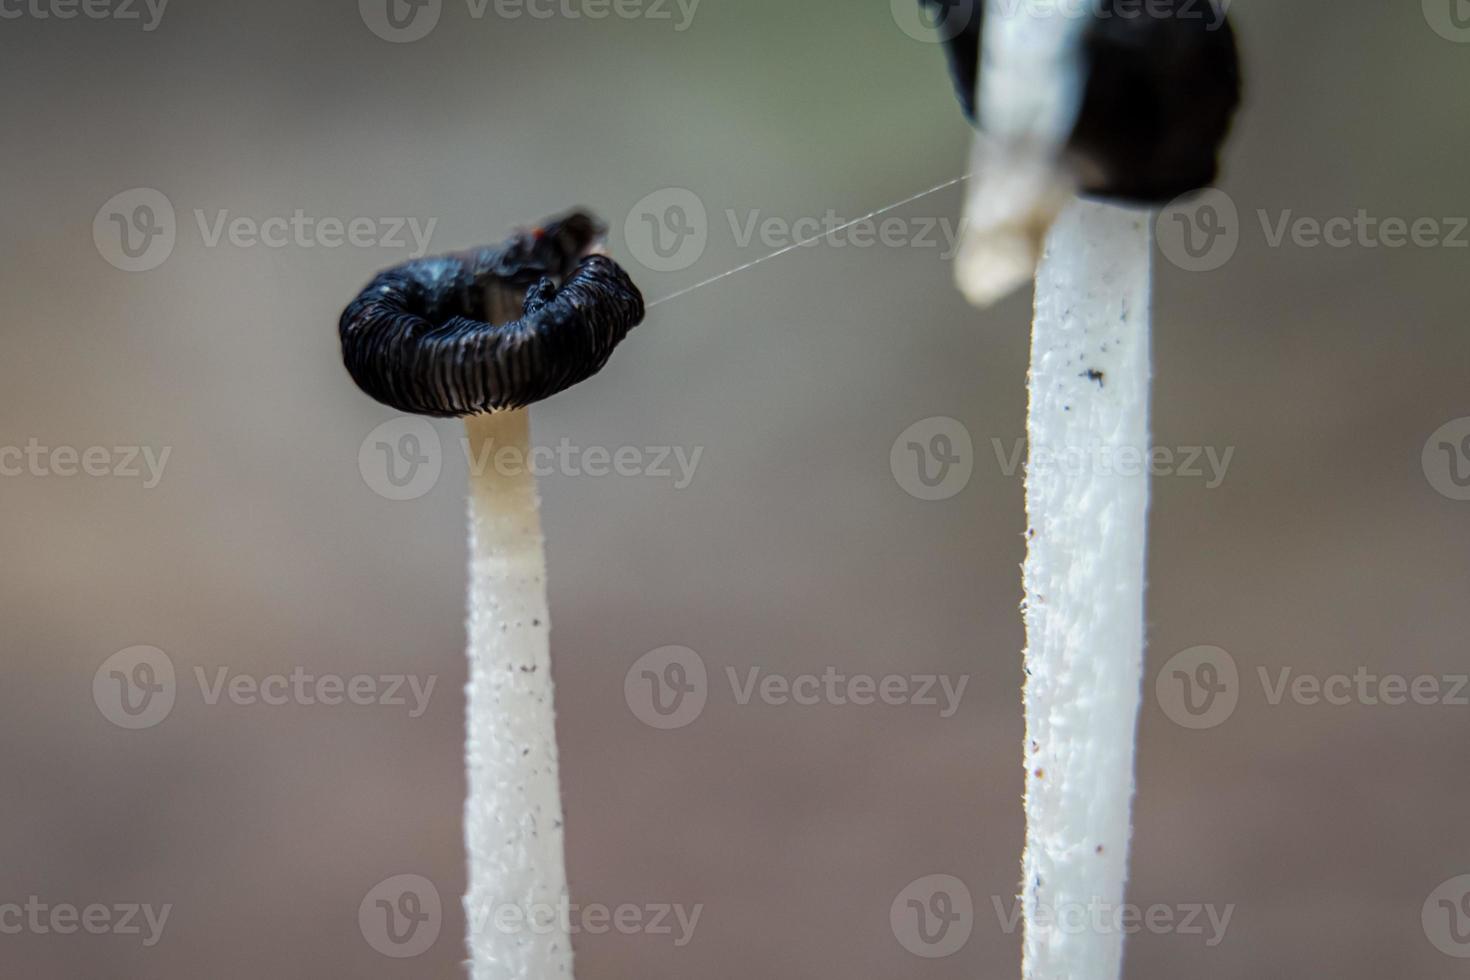 mooi detailopname van Woud champignons in gras, herfst seizoen. weinig vers paddestoelen, groeit in herfst Woud. champignons en doorbladert in Woud. paddestoel plukken concept. foto